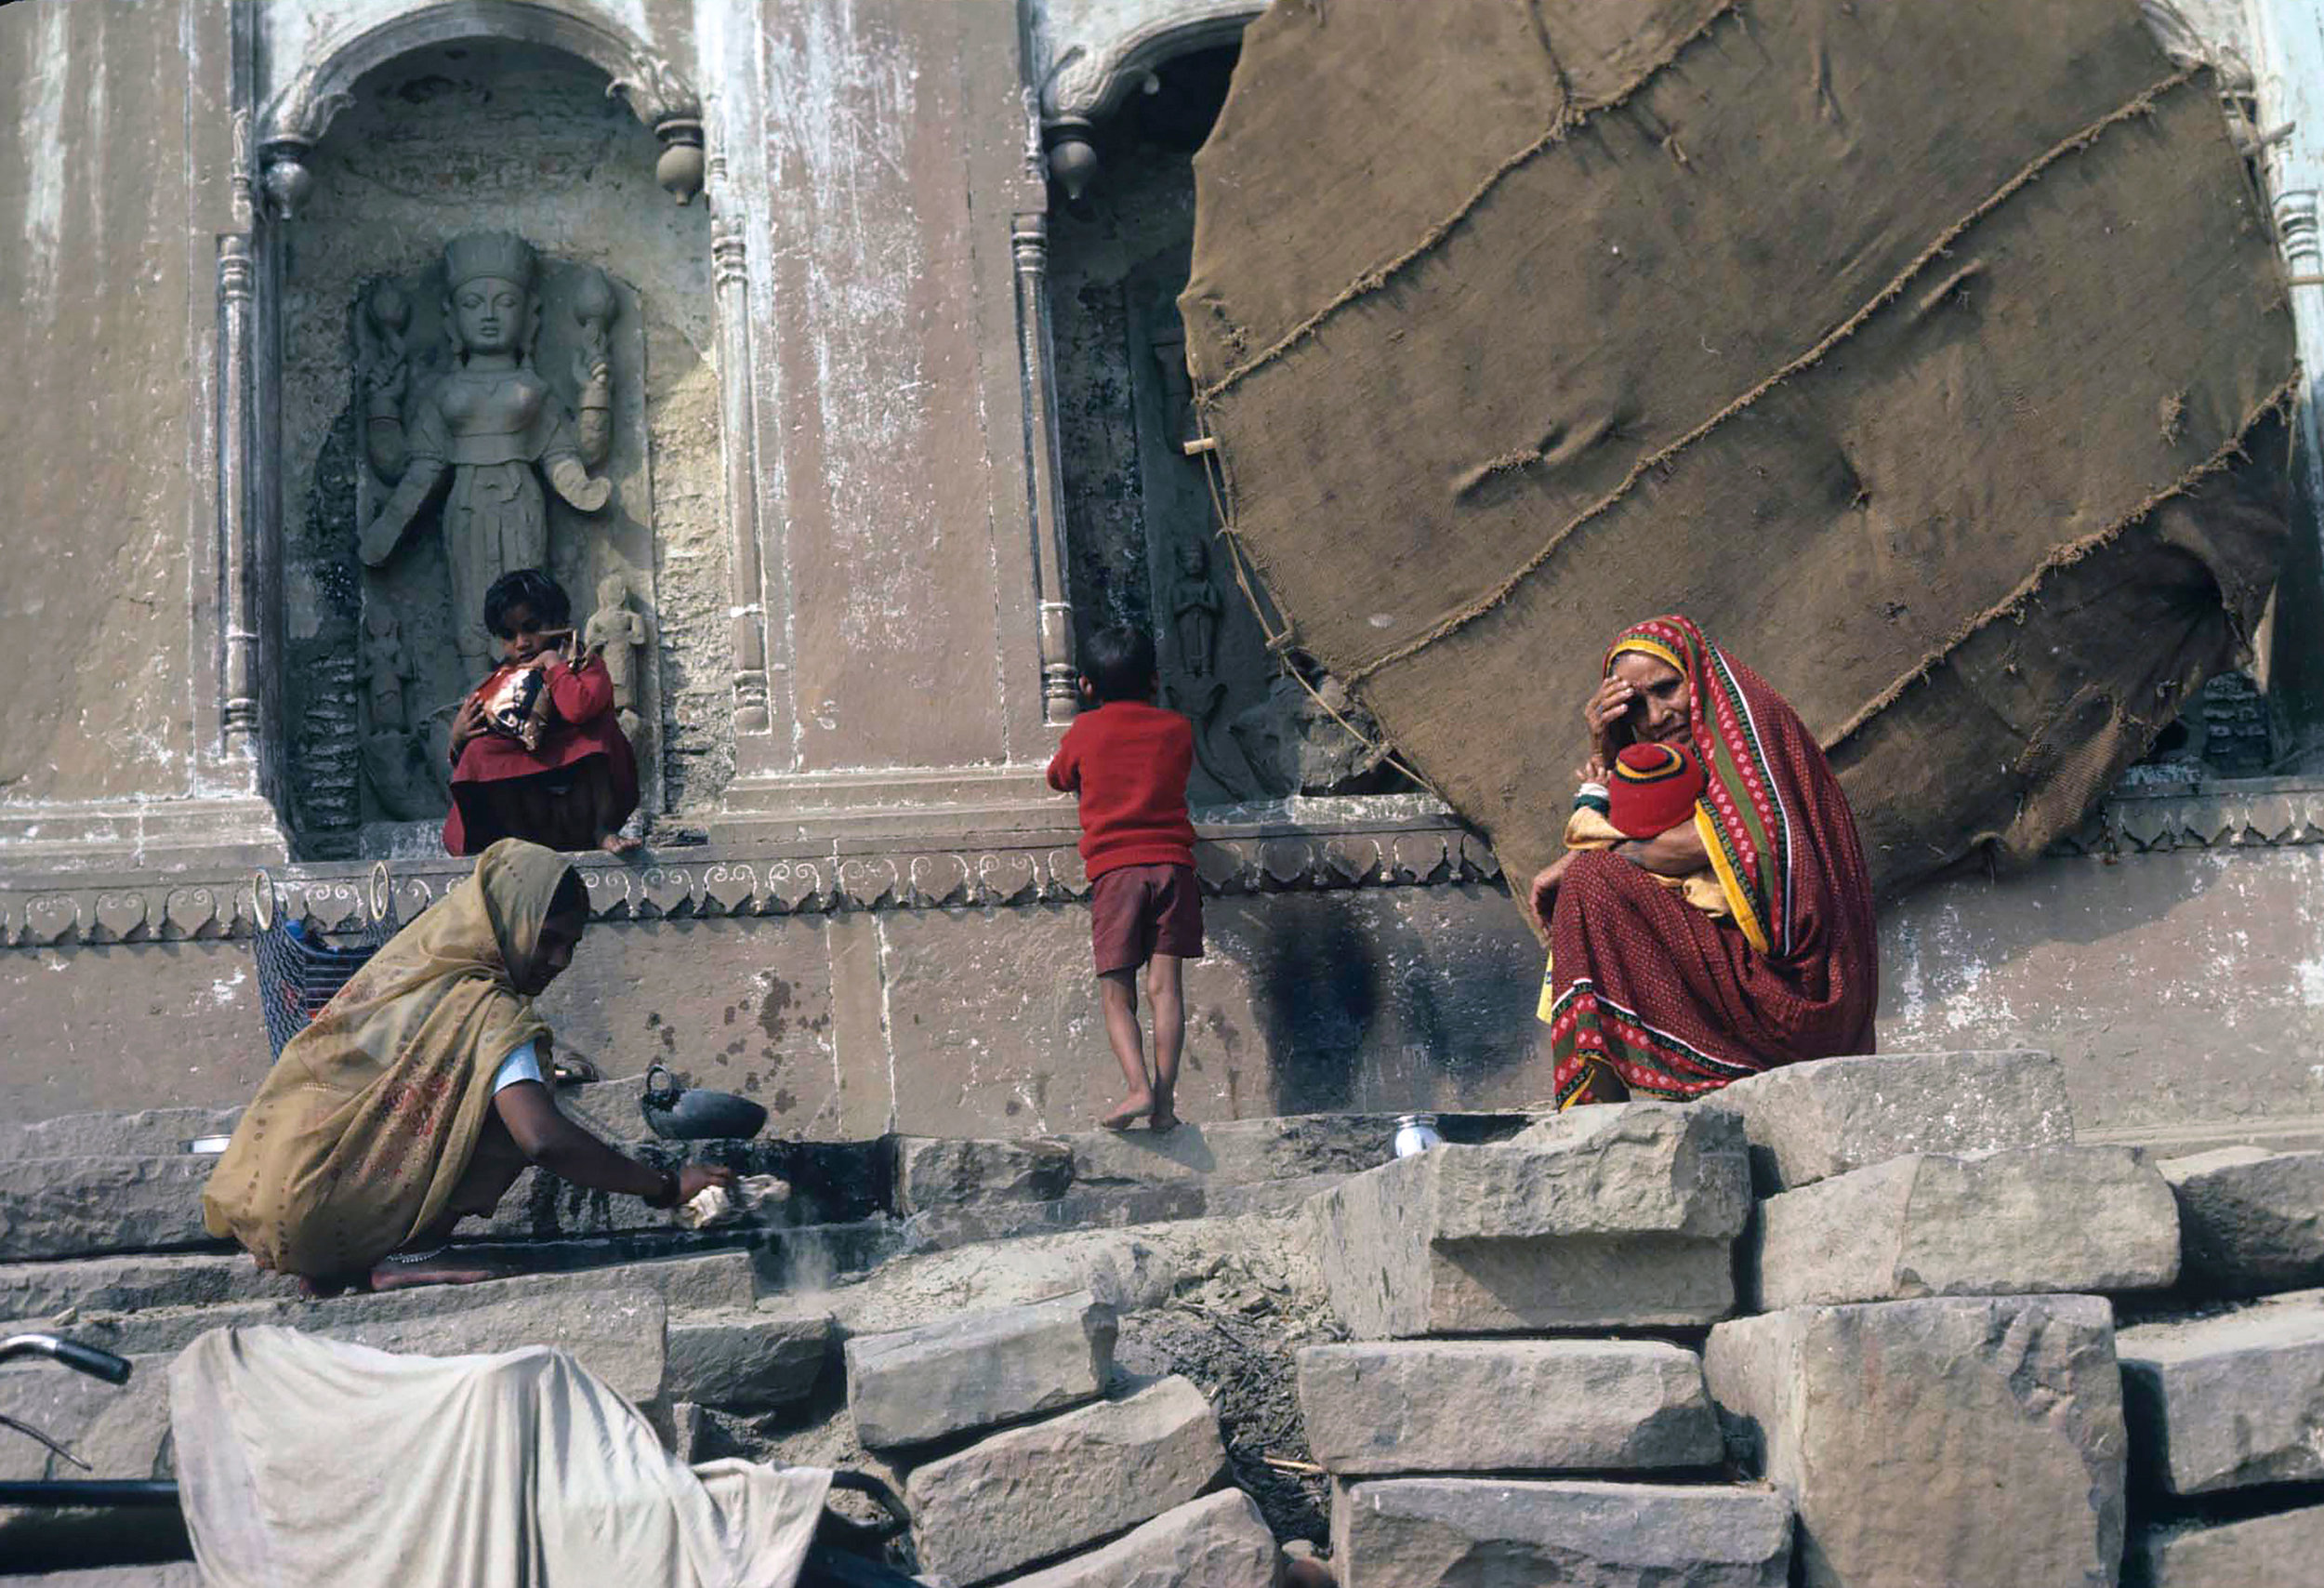 Woman Washing Clothes / Varanasi, India